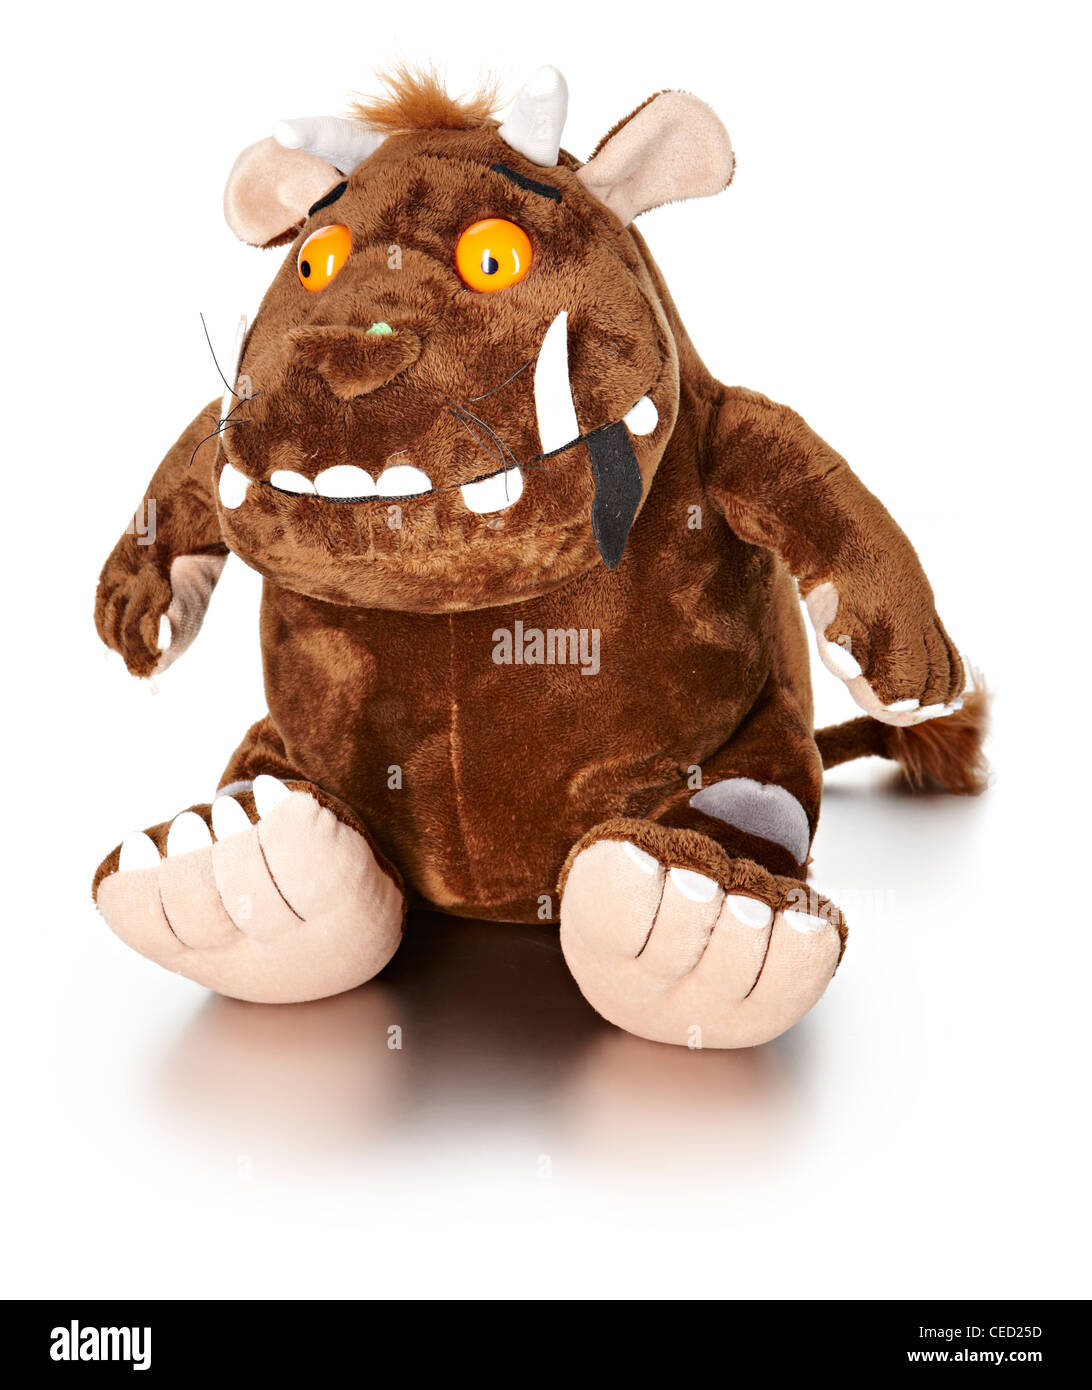 Gruffalo stuffed toy Stock Photo